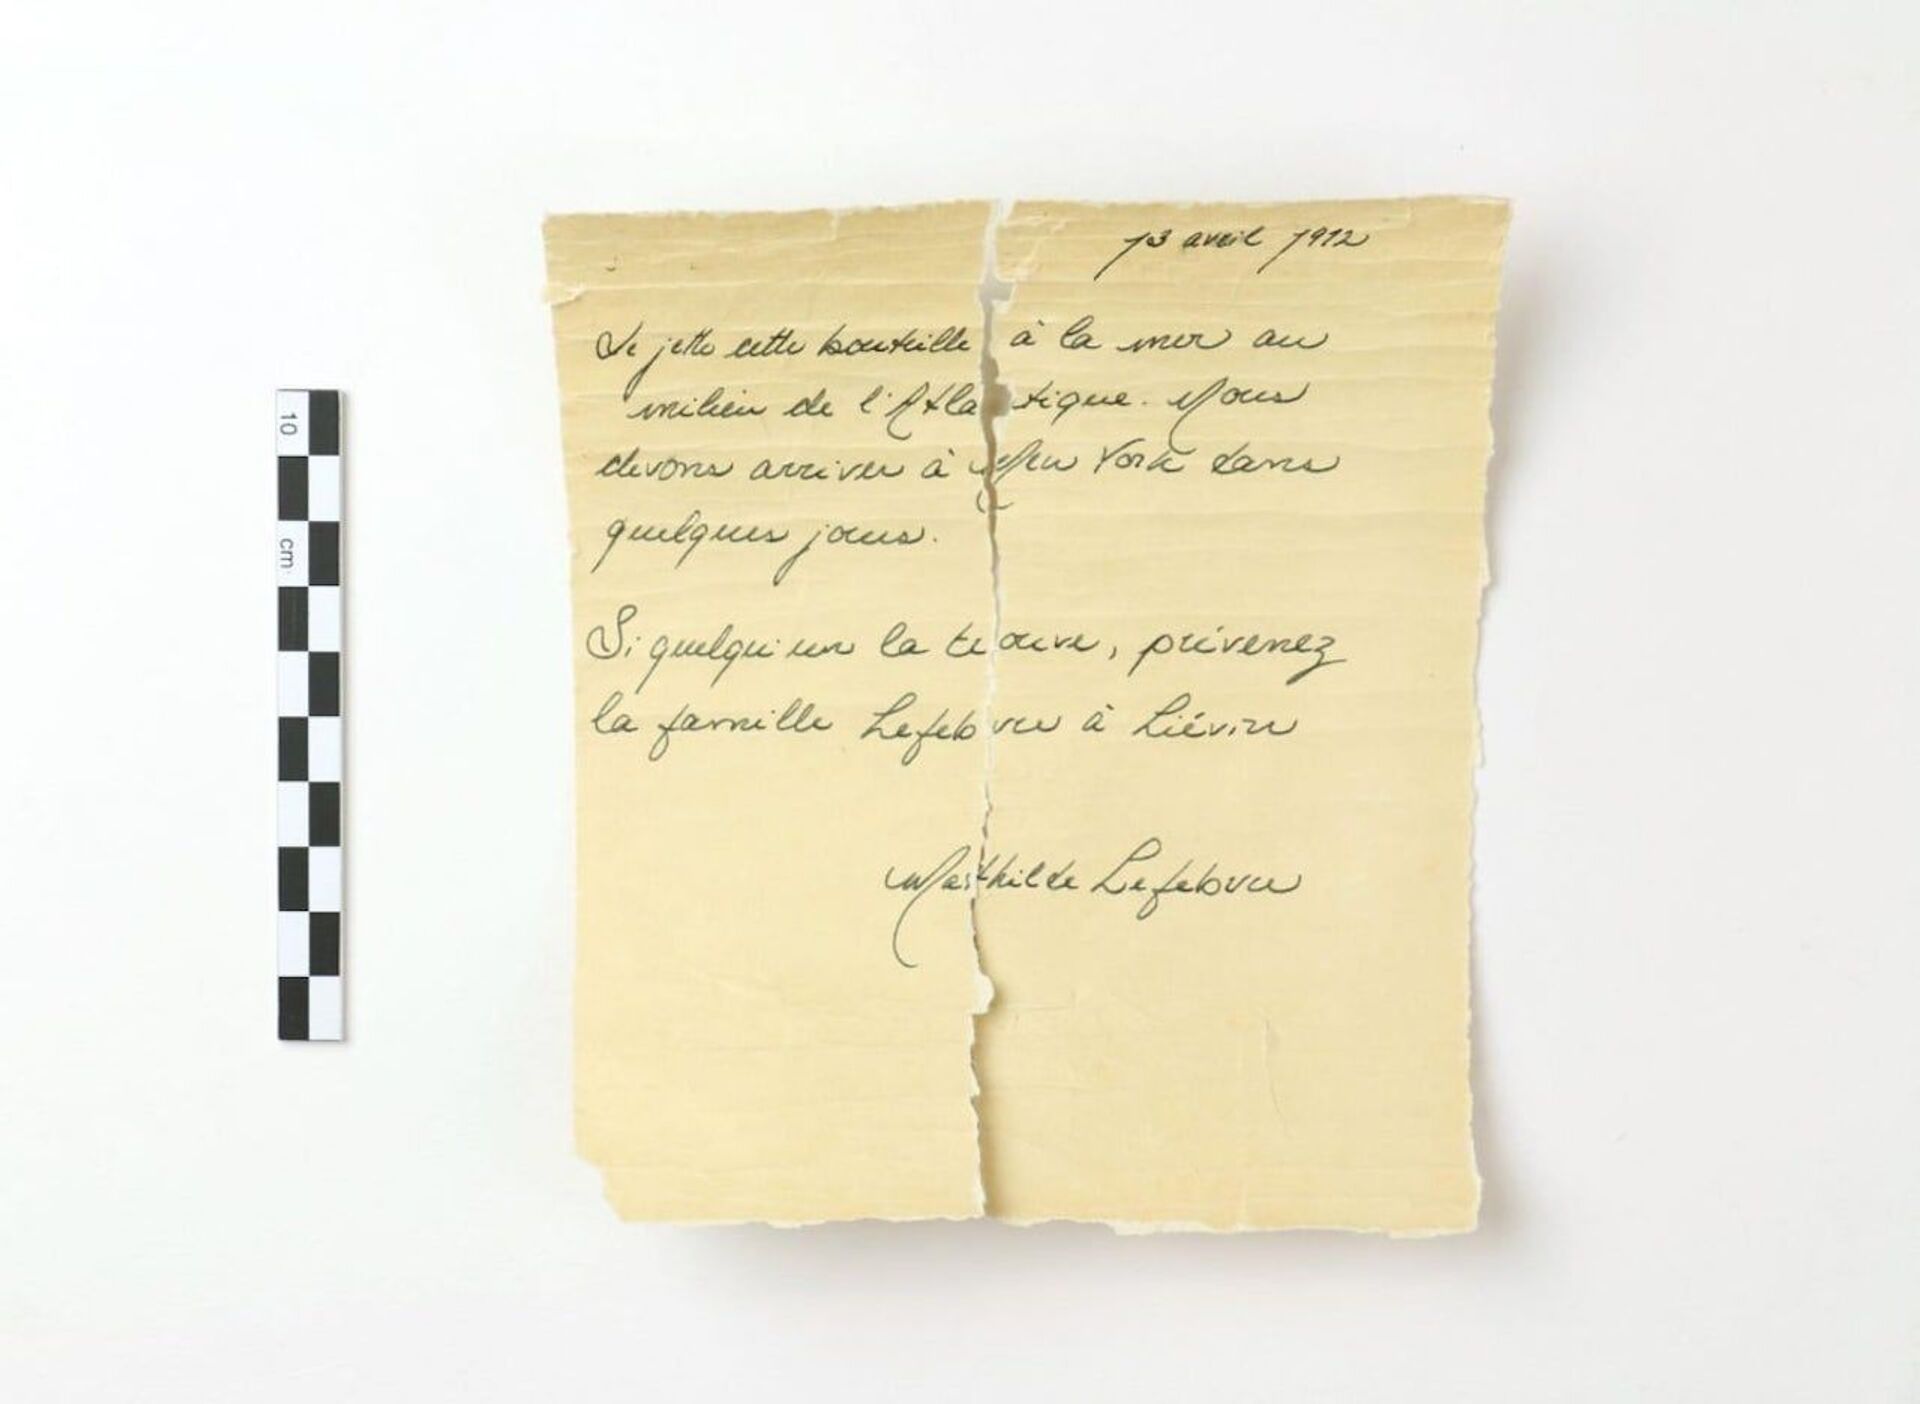 Suposta carta do Titanic escrita por garota é encontrada no Canadá (FOTOS) - Sputnik Brasil, 1920, 14.05.2021